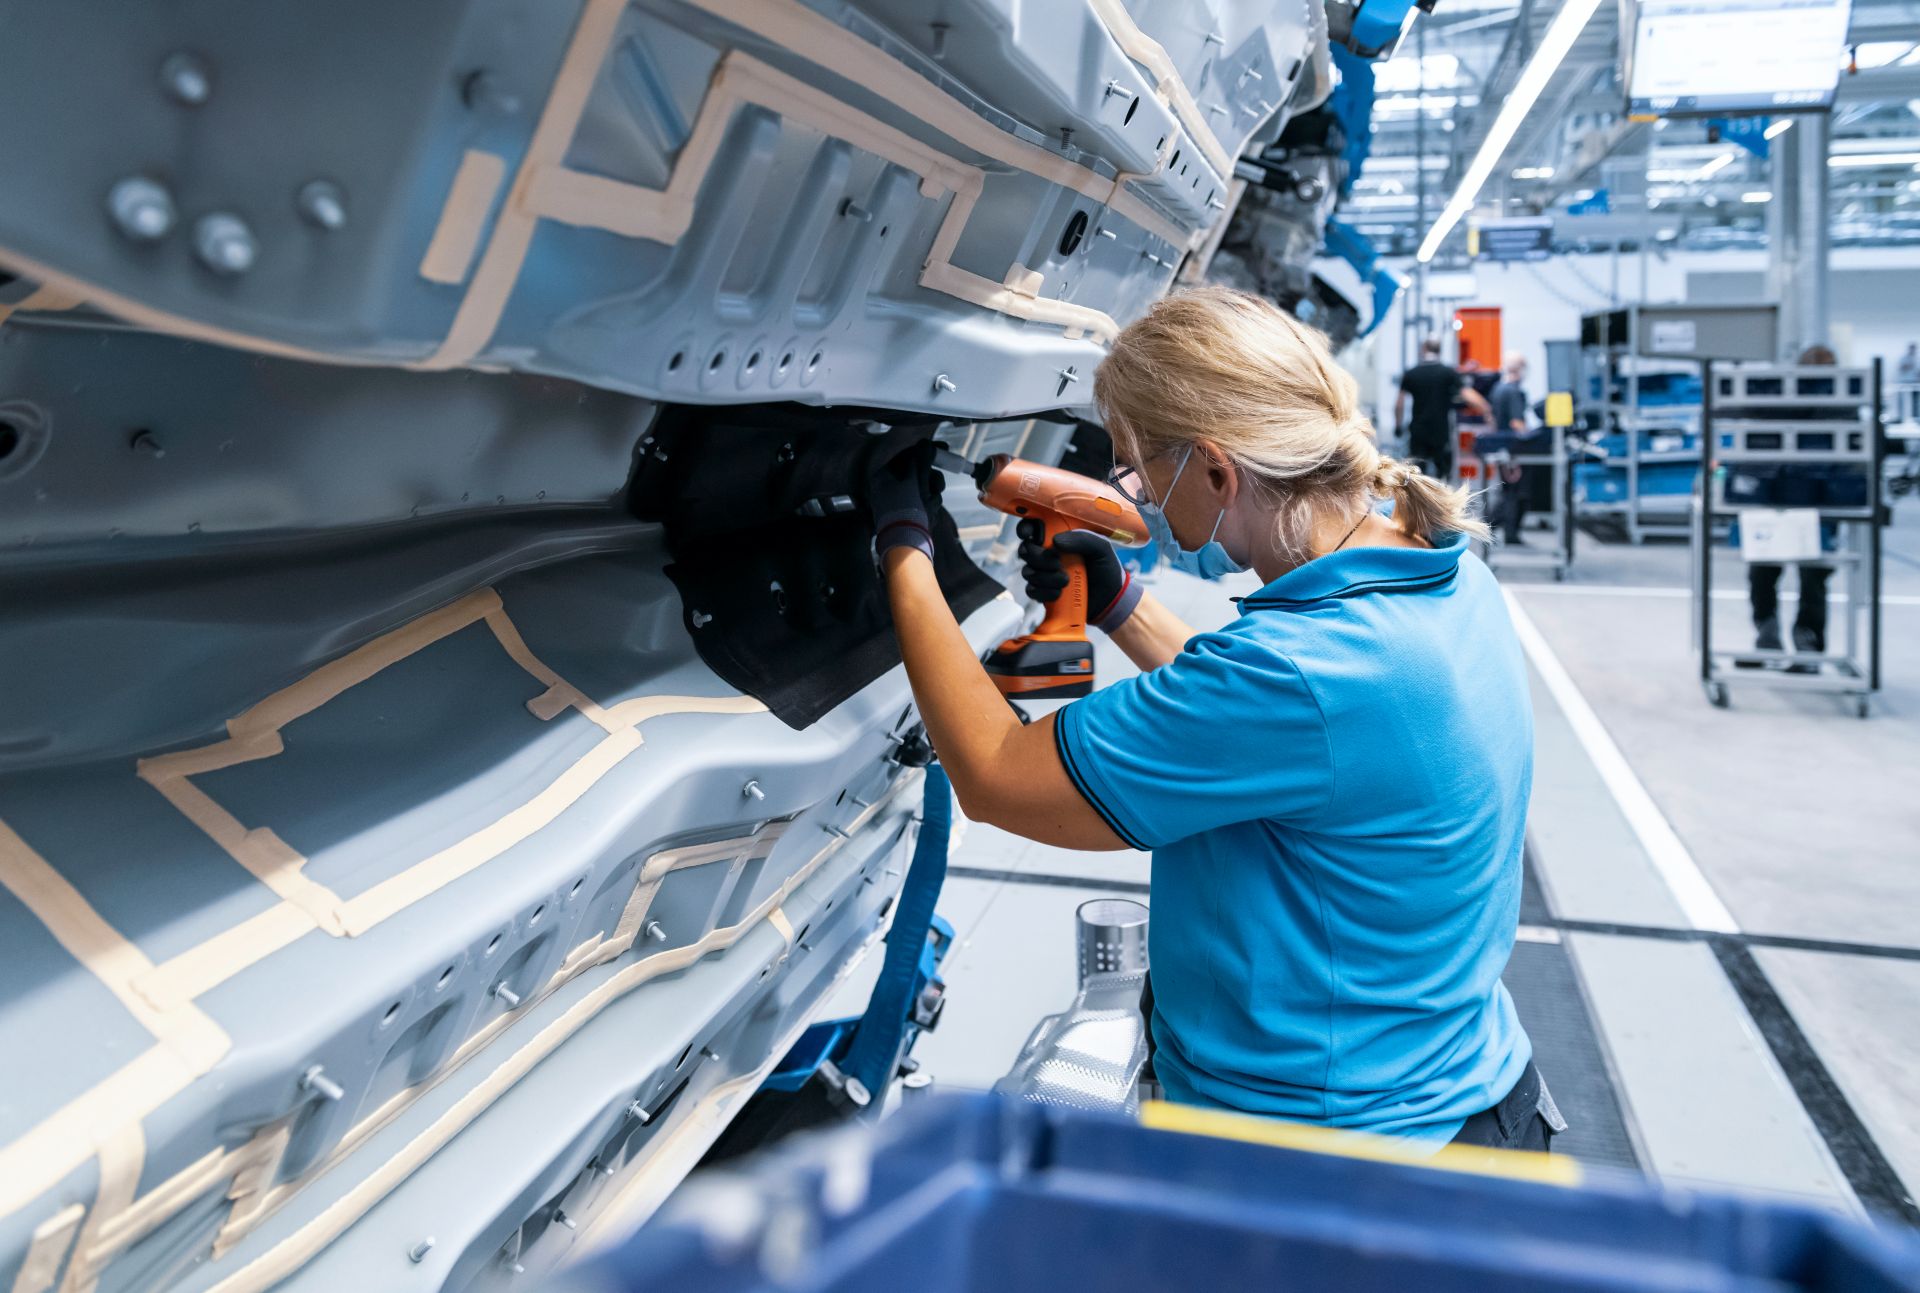 بدء إنتاج مرسيدس إس كلاس 2021 في "مصنع السيارات الأكثر تطوراً في العالم" 7